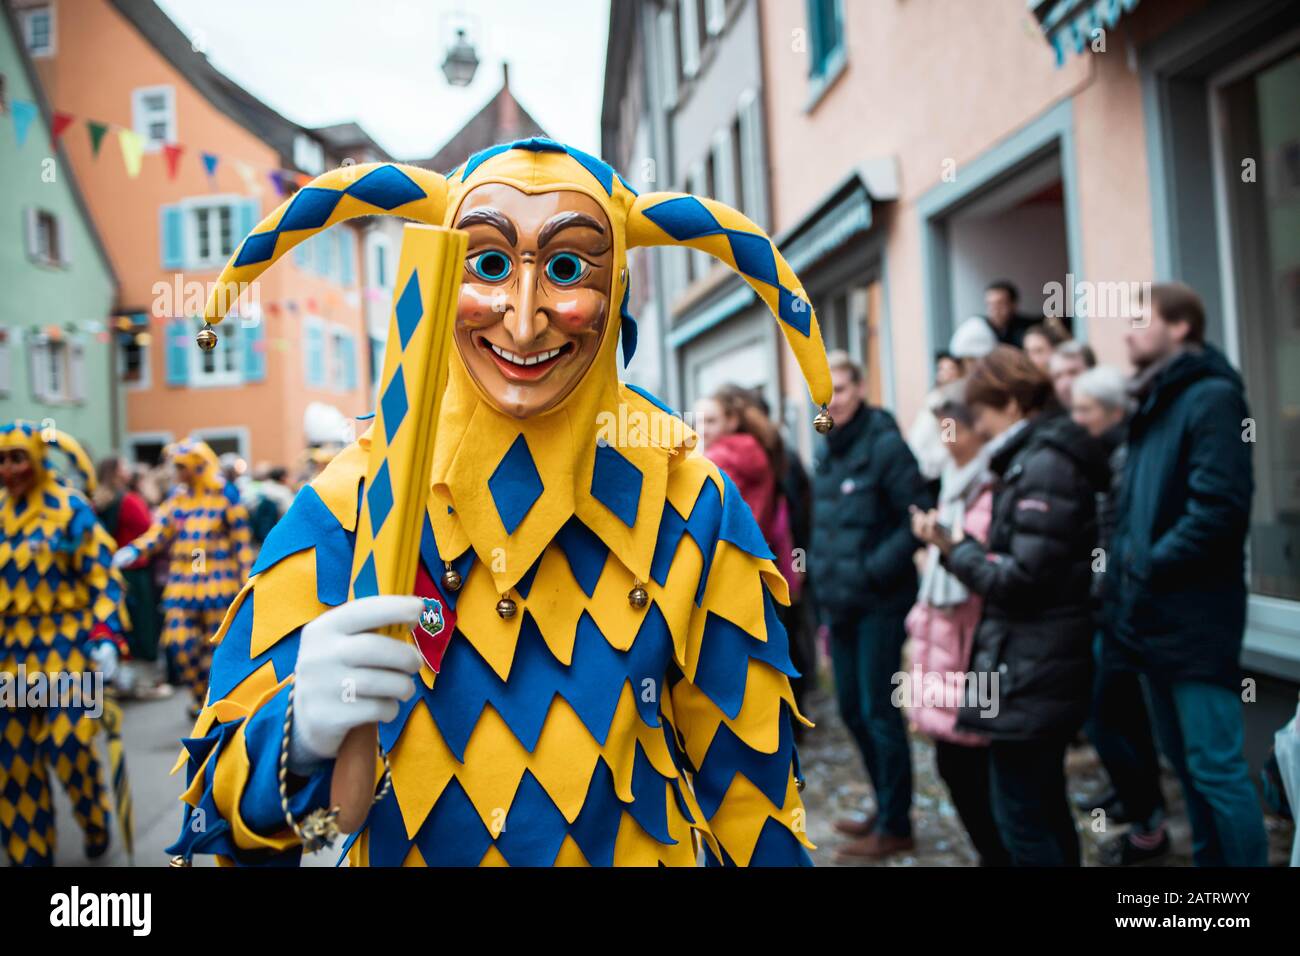 Bajass de Waldkirch - figure imbécile en robe bleu-jaune montre un objet traditionnel, pendant le défilé de carnaval à Staufen, dans le sud de l'Allemagne Banque D'Images